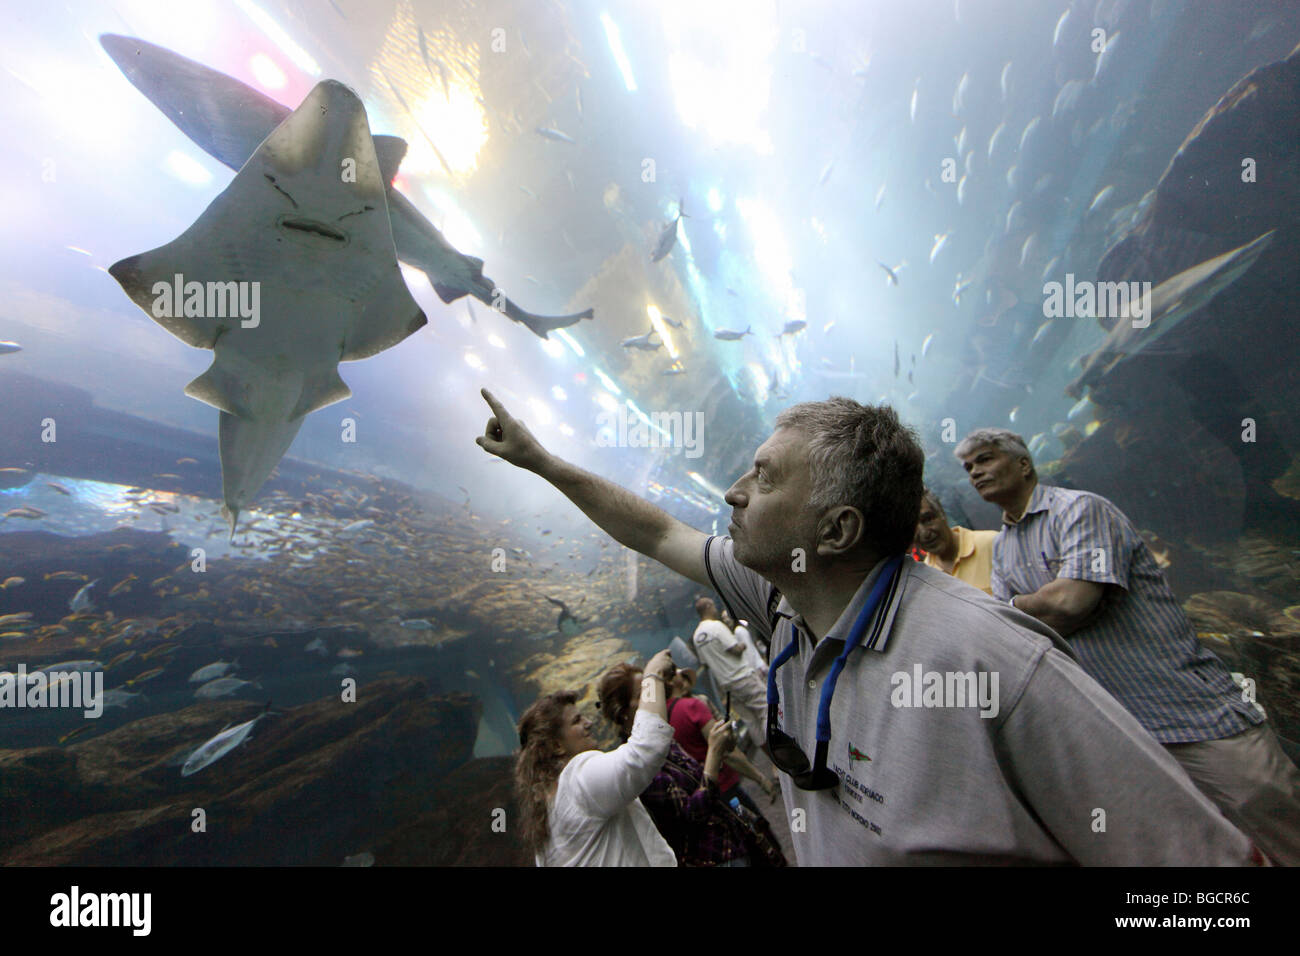 A man pointing at a manta ray at the Dubai Aquarium, United Arab Emirates Stock Photo